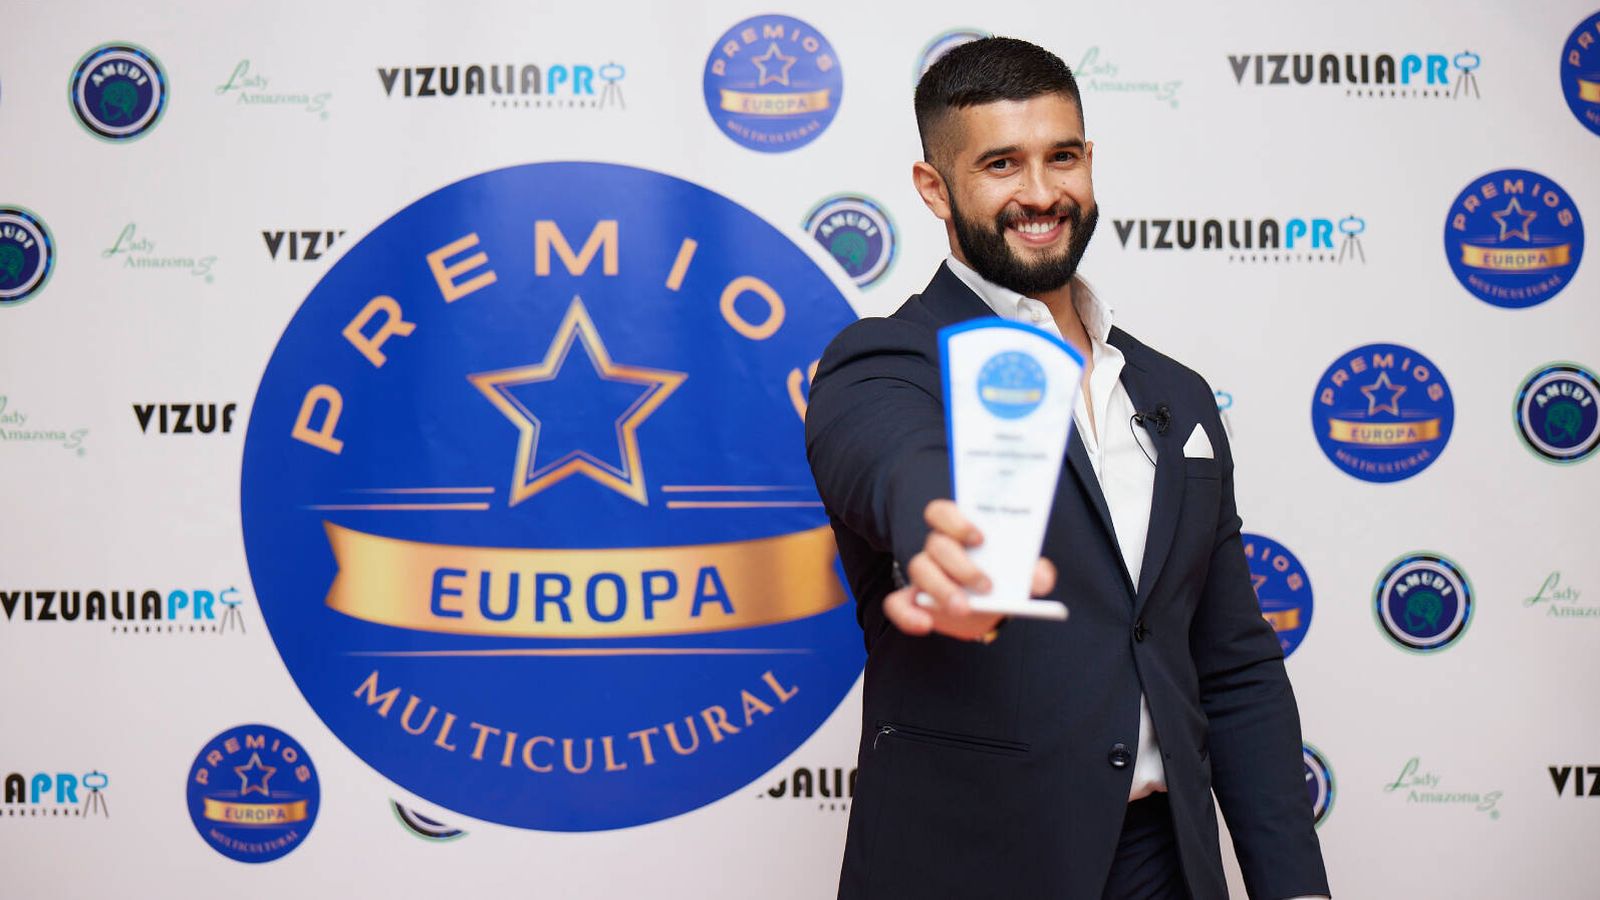 Pablo Bogado recibiendo el premio Europa Multicultural a Mejor Estilista Internacional. (Cortesía)